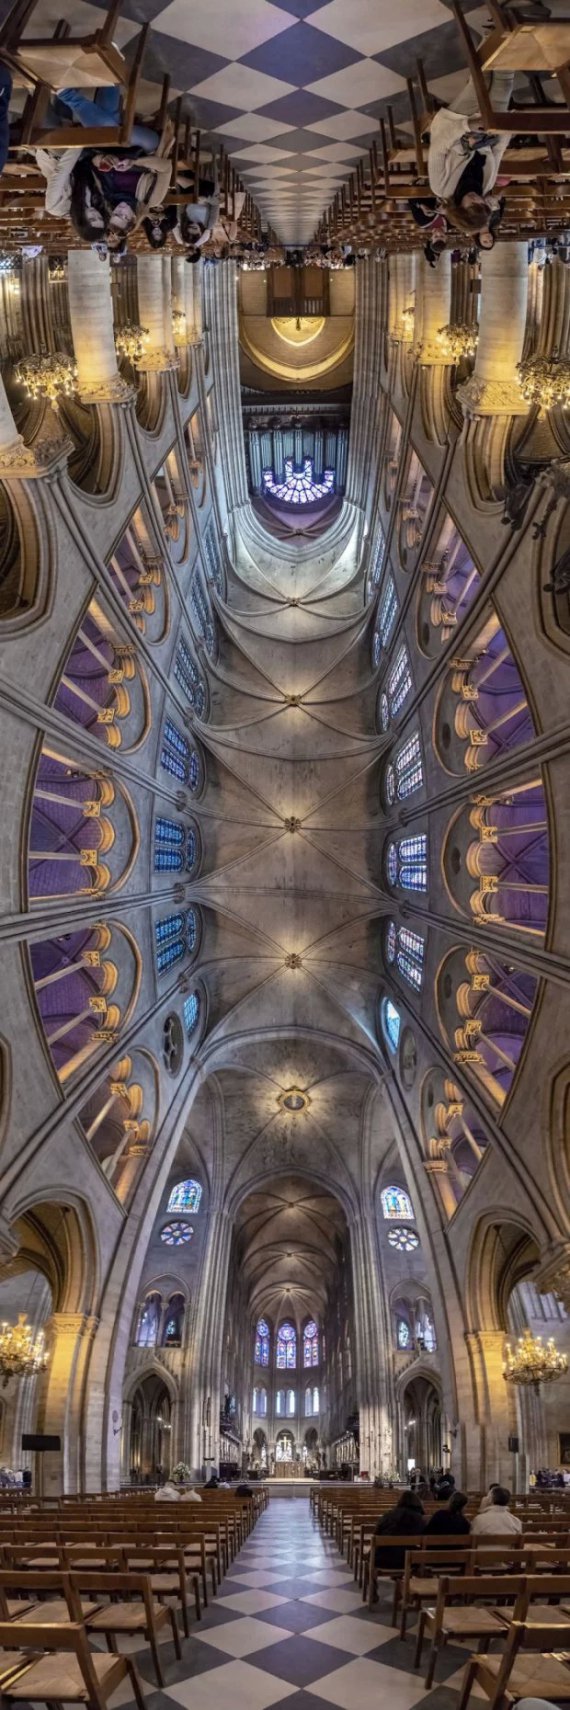 Ричард Силвер сделал необычные панорамные снимки различных соборов